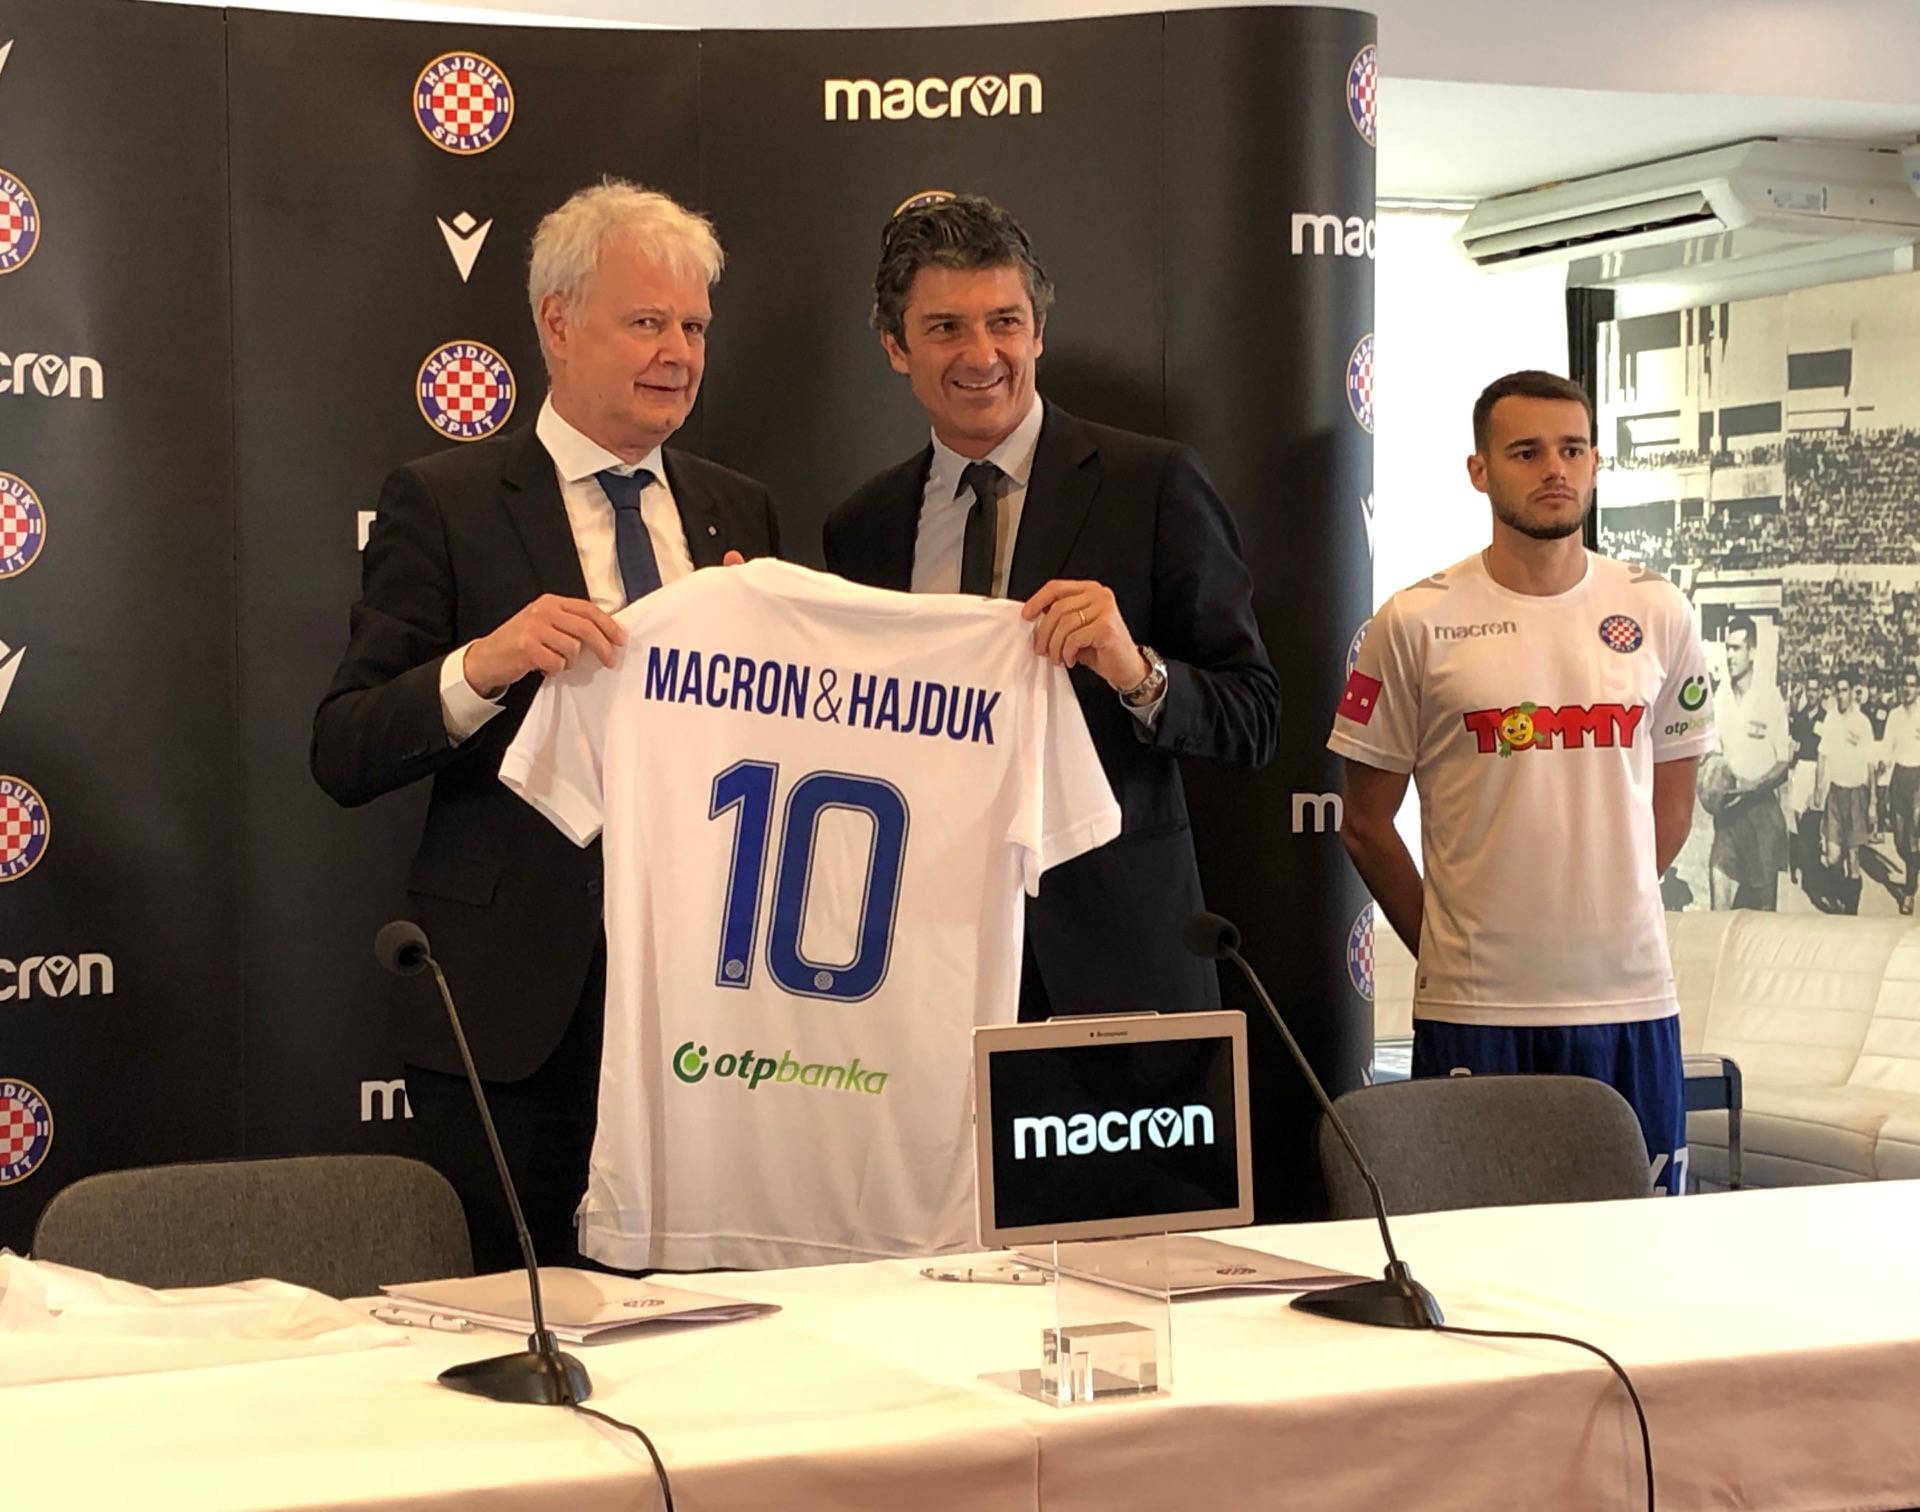 Hajduk Macron